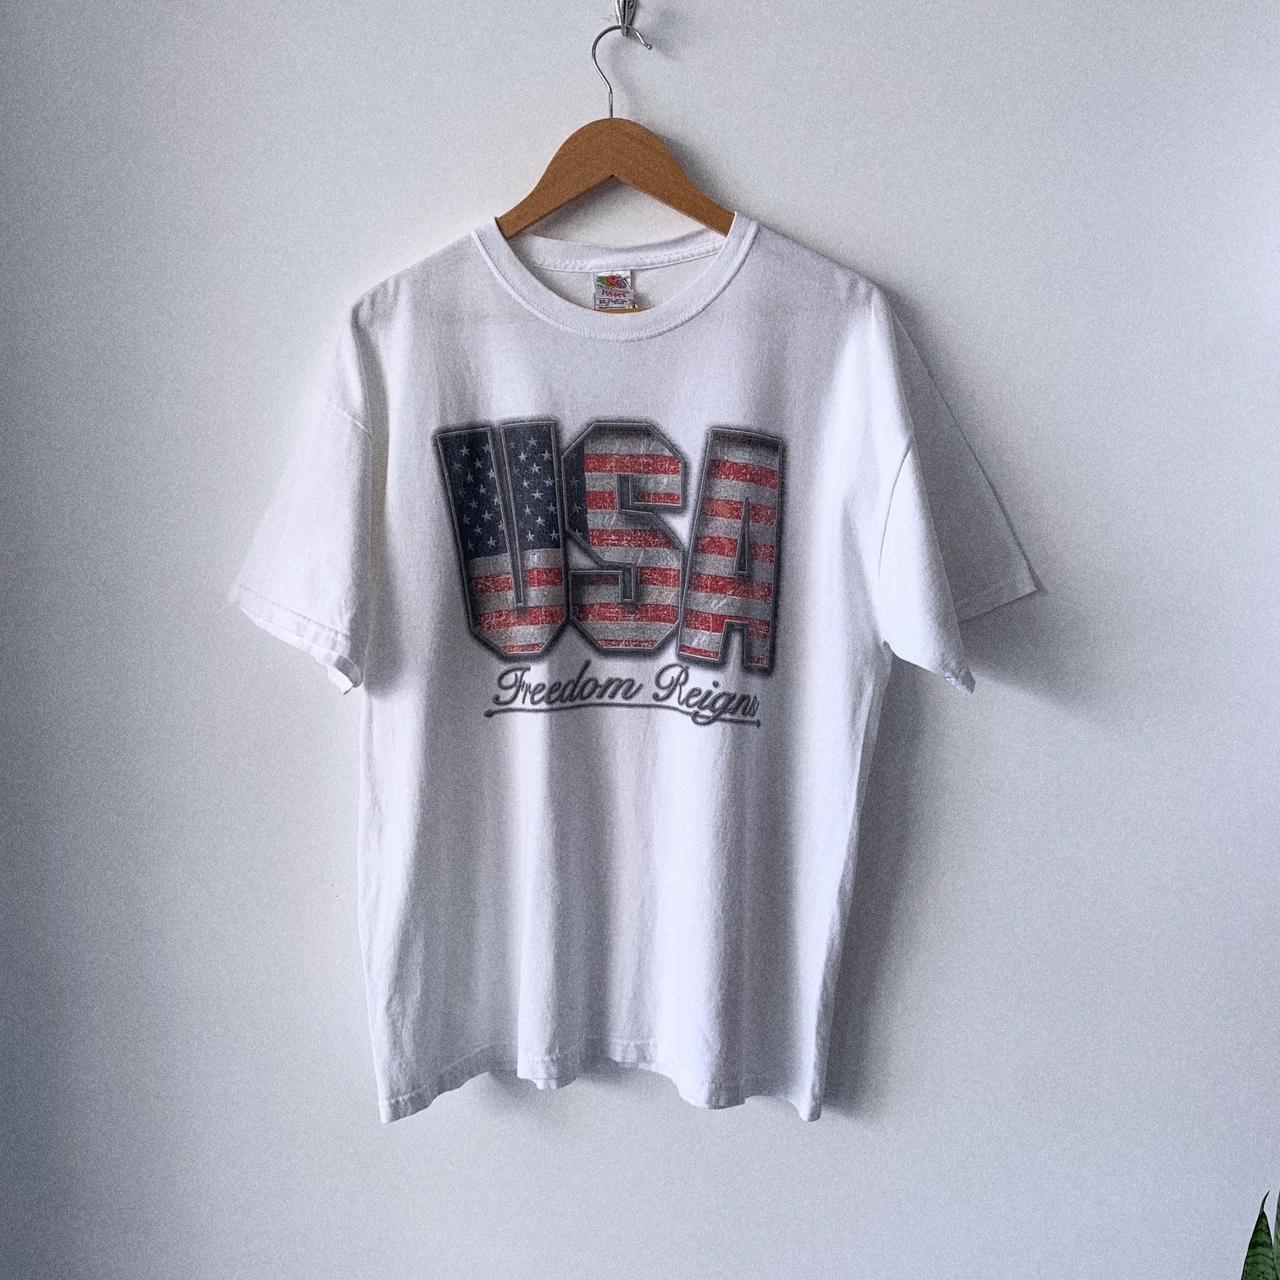 USA graphic tshirt. Print reads “Freedom Reigns”.... - Depop